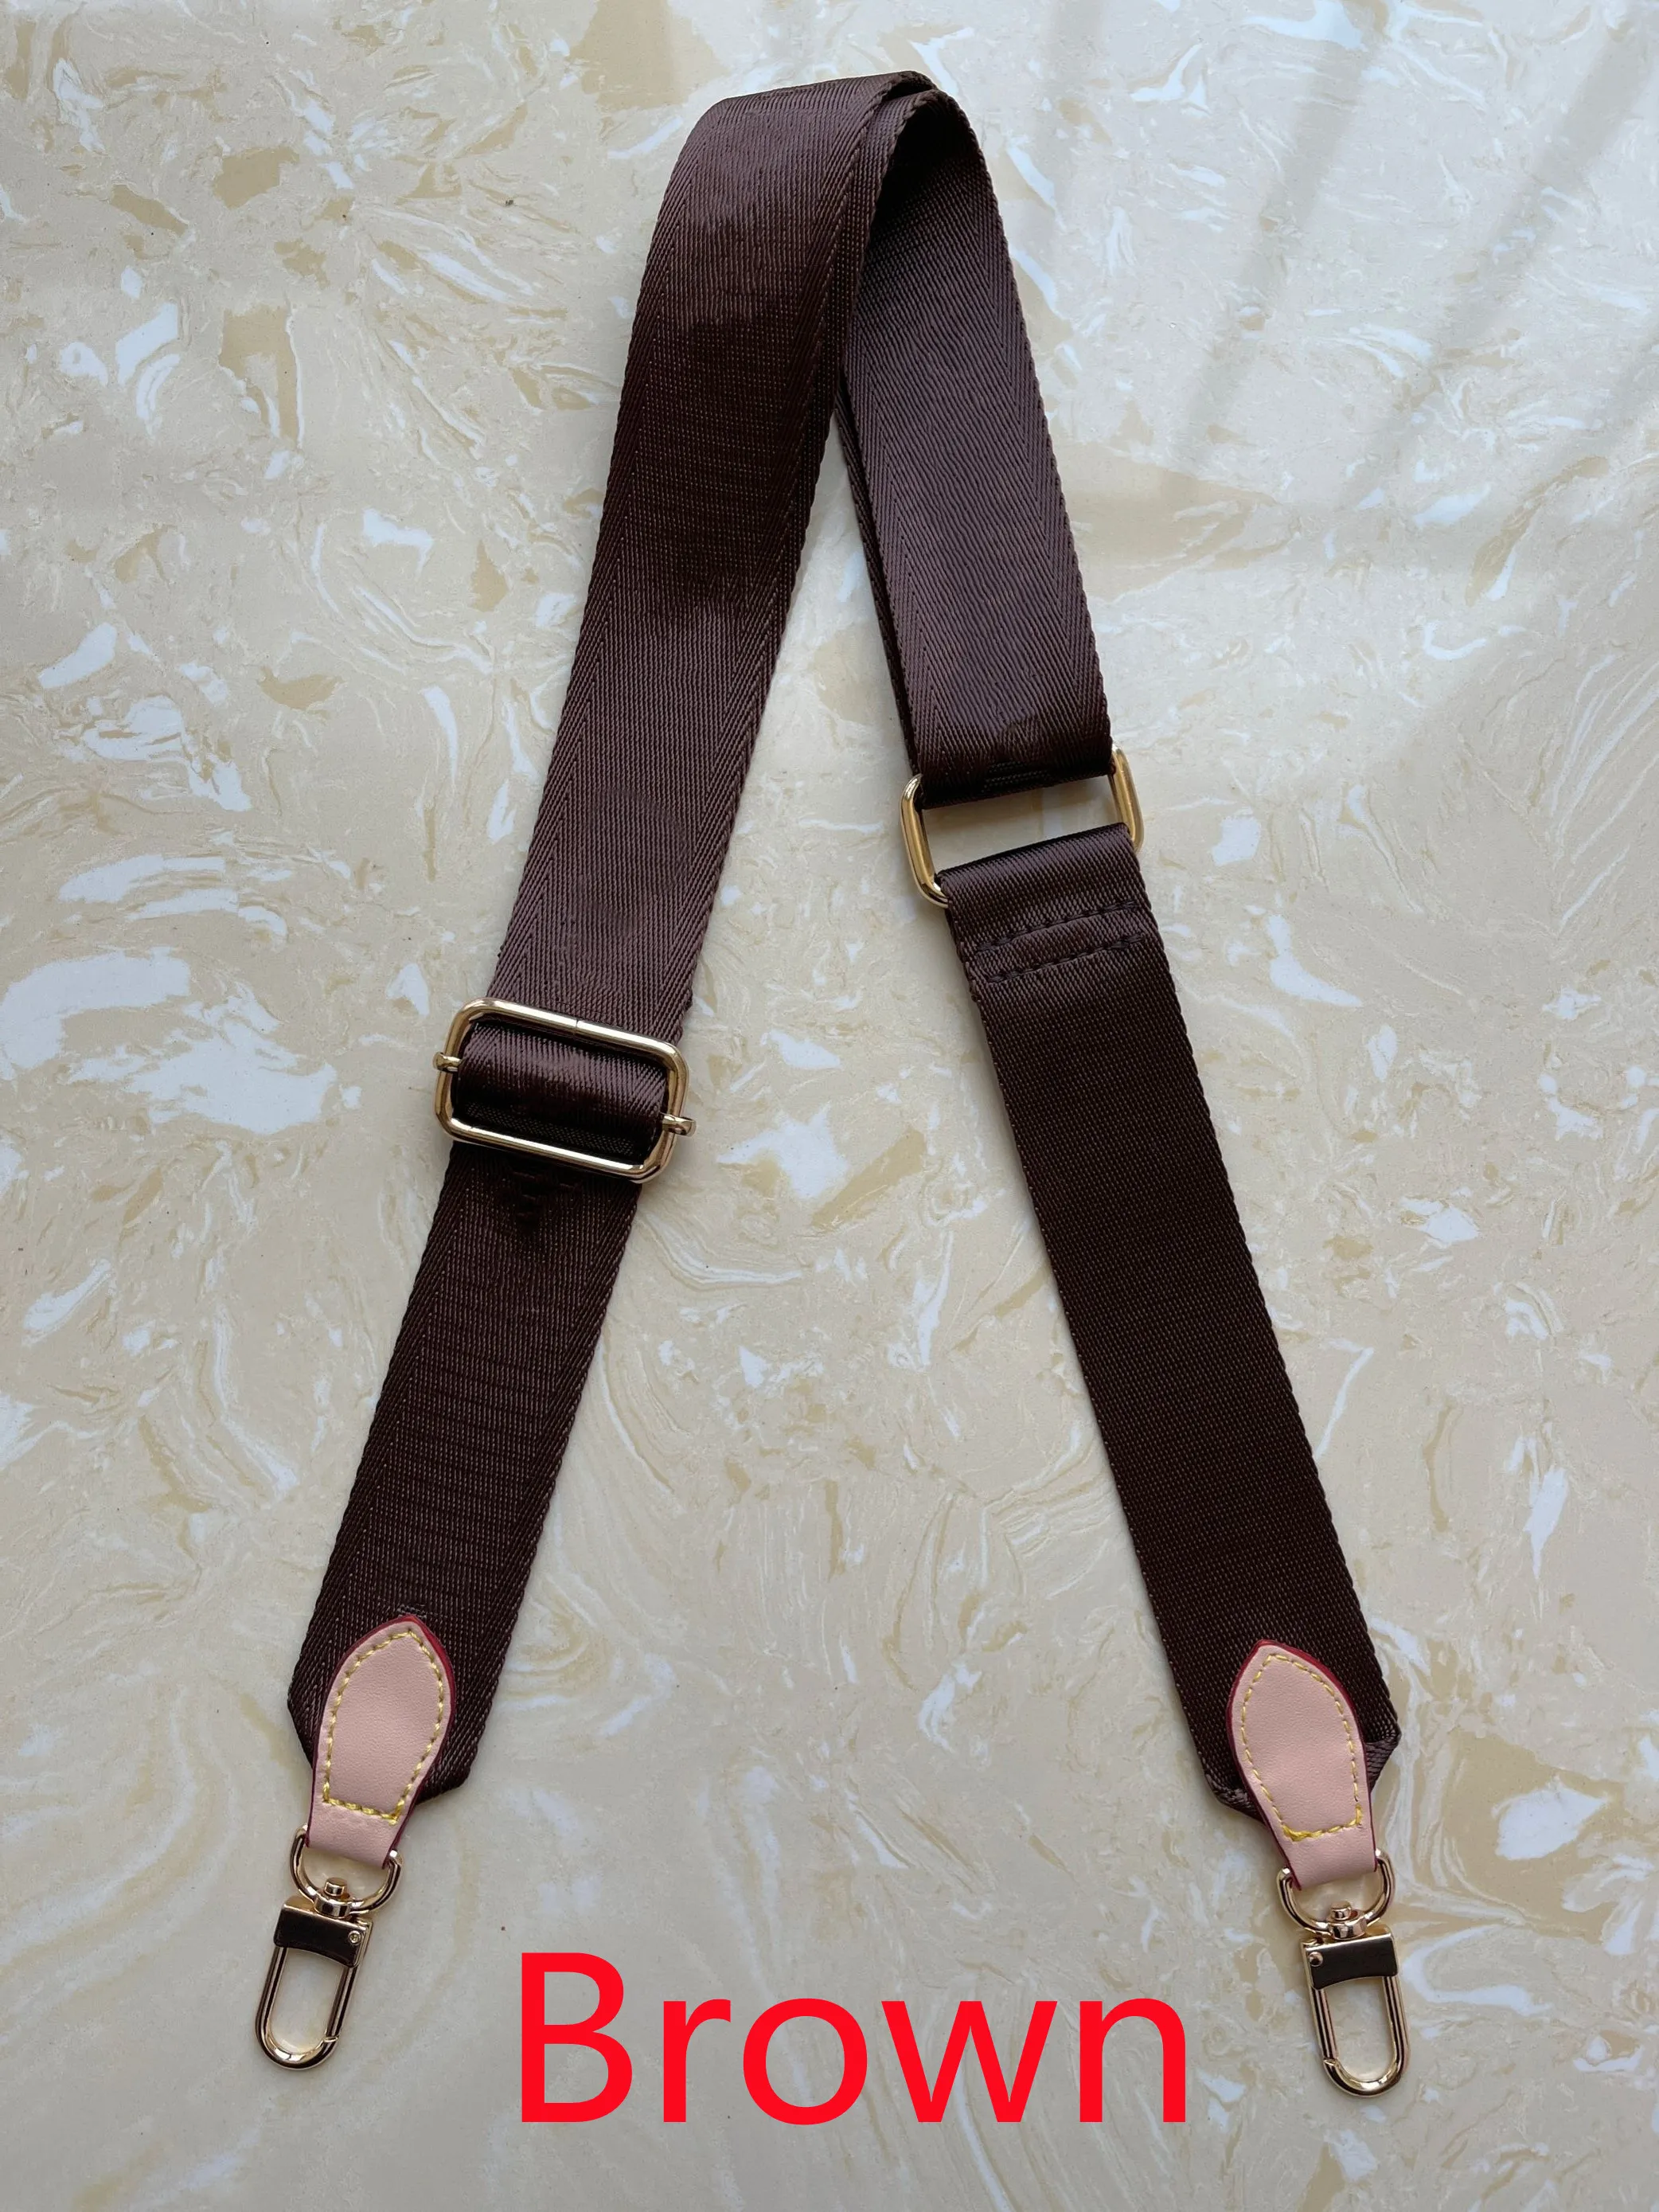 Brand Designer Bag Strap for Women 70 to 120 cm Crossbody Bags Belt Straps  Fashion Shoulder Purse